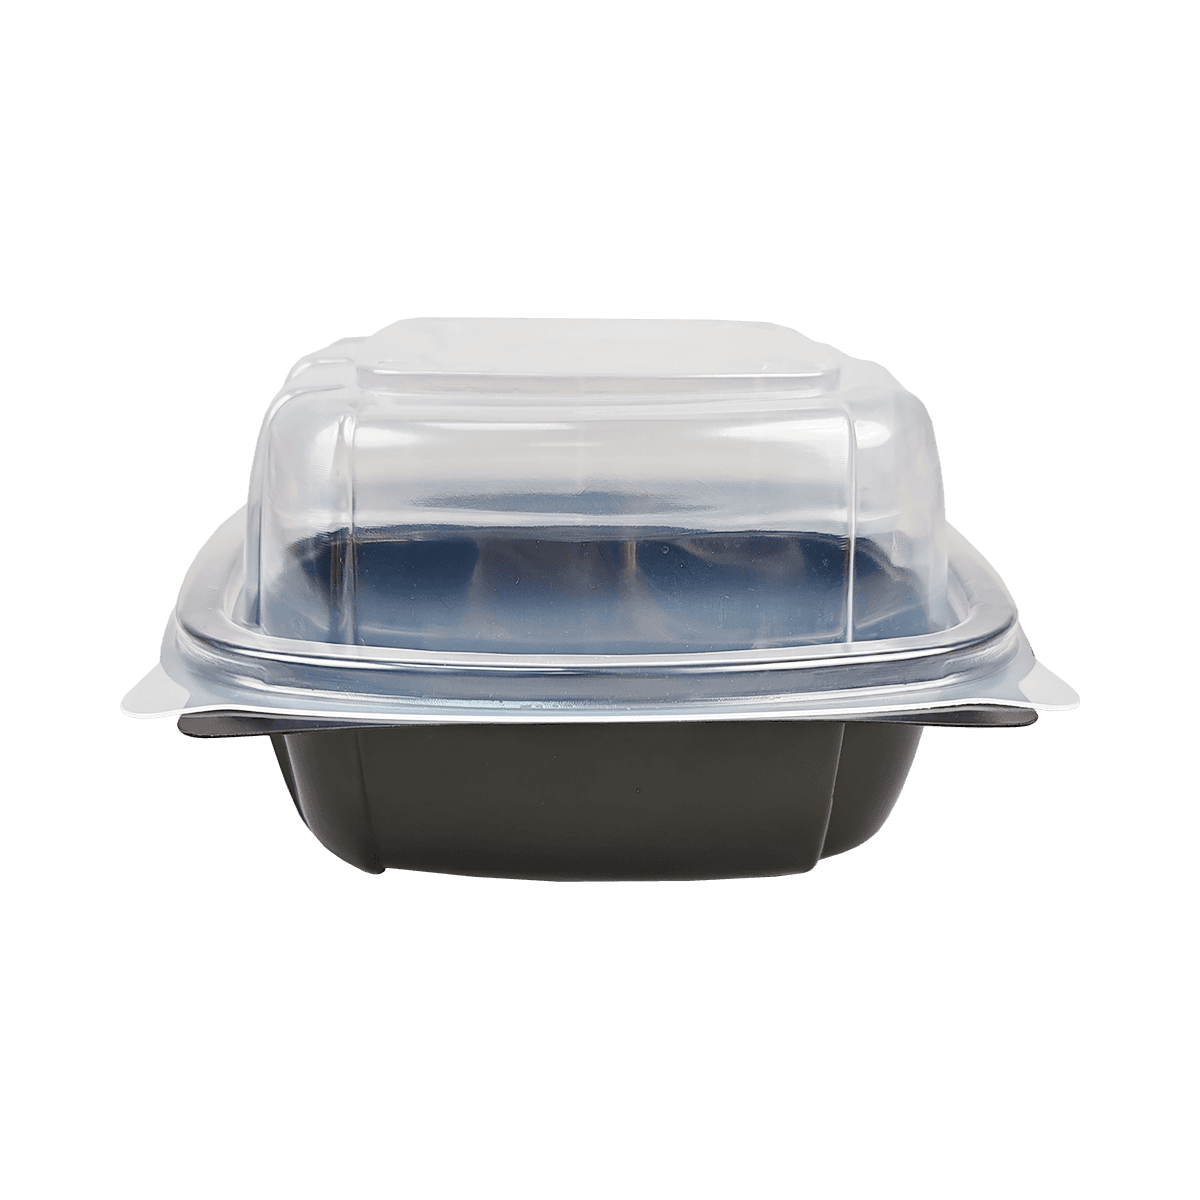 Envases de embalaje de PP negros reutilizables ZK-PP-037 adecuados para viajes, camping y comidas campestres